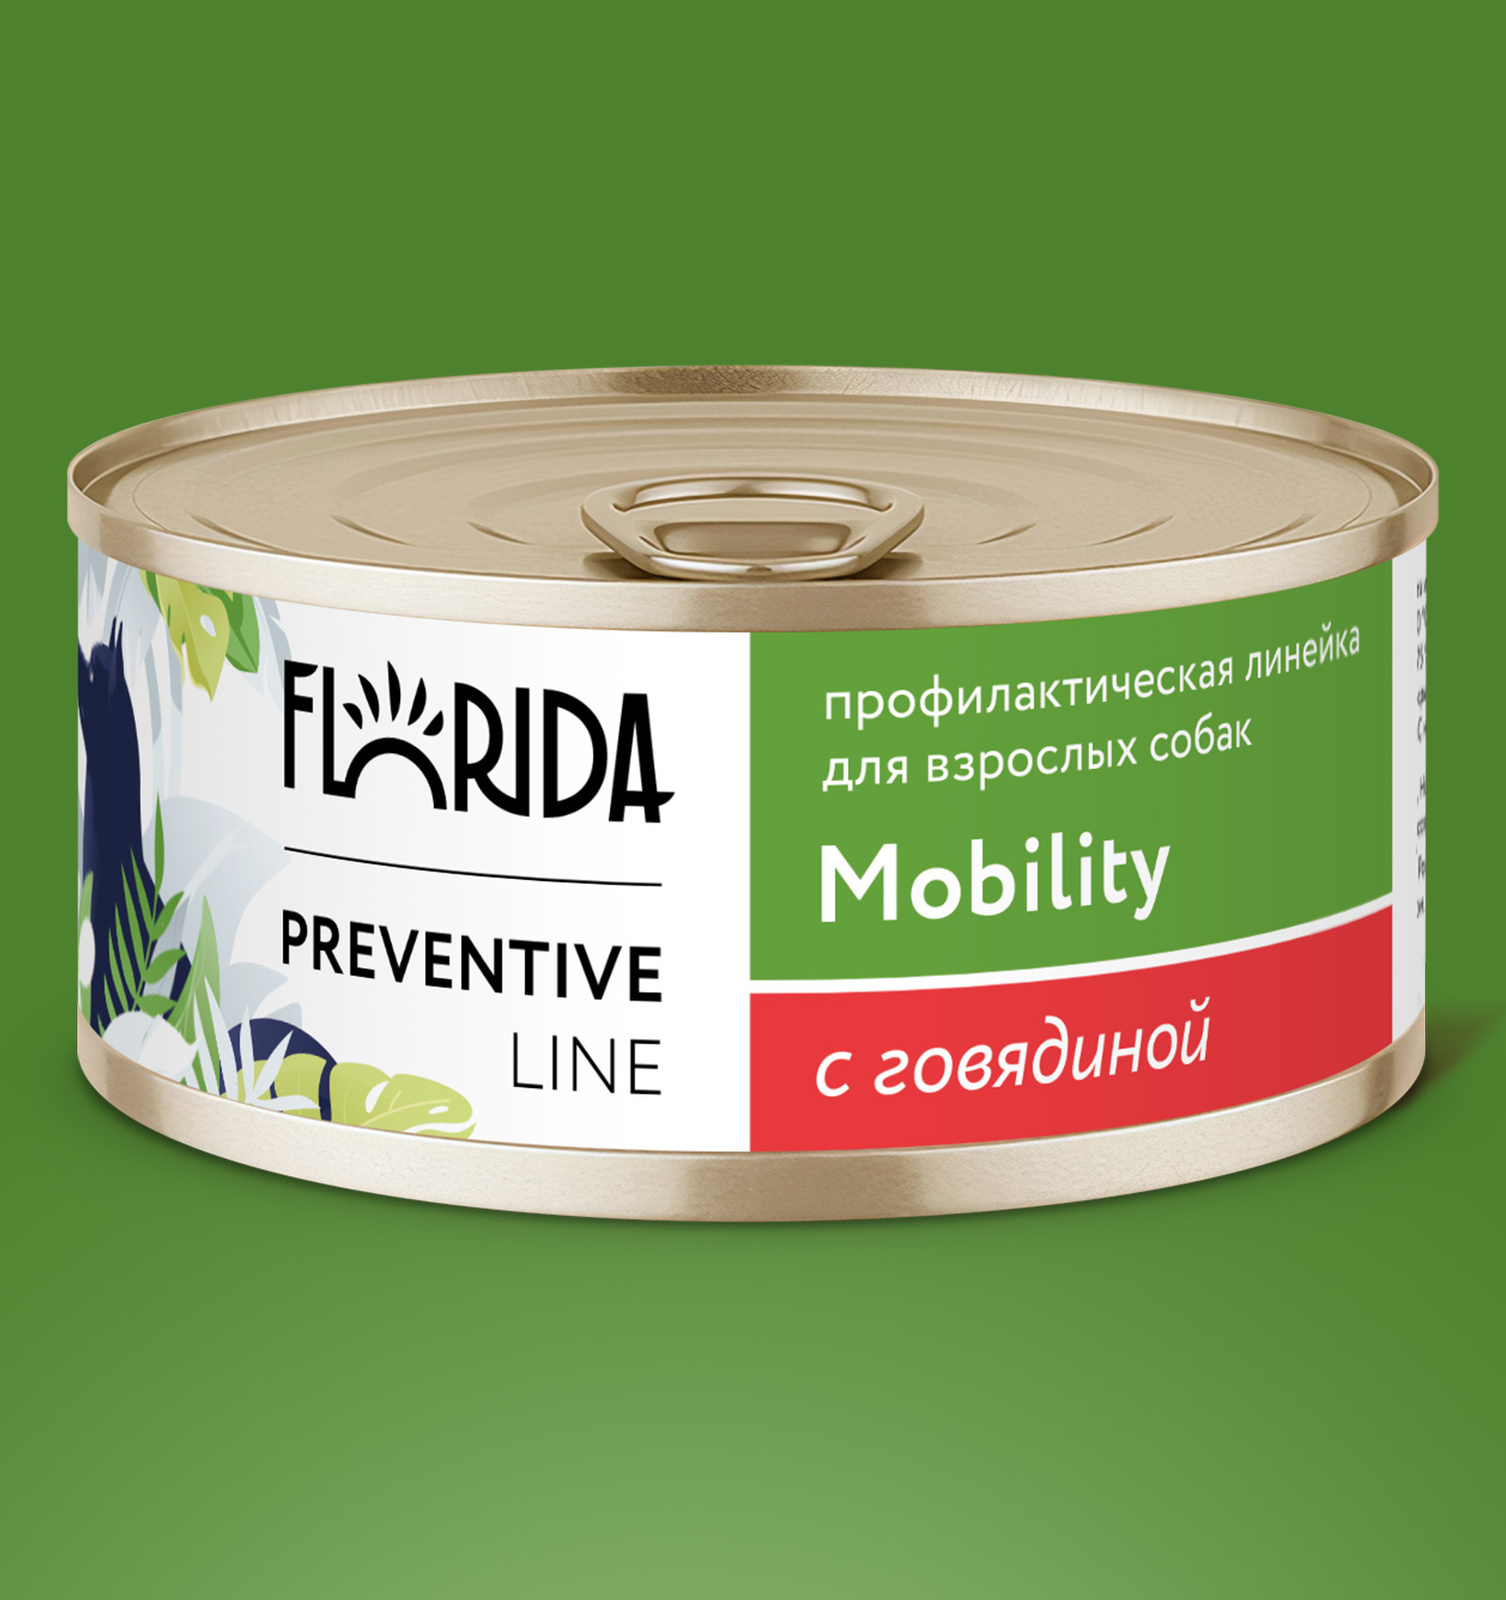 Florida Preventive Line консервы Florida Preventive Line консервы mobility для собак Профилактика болезней опорно-двигательного аппарата с говядиной (340 г)